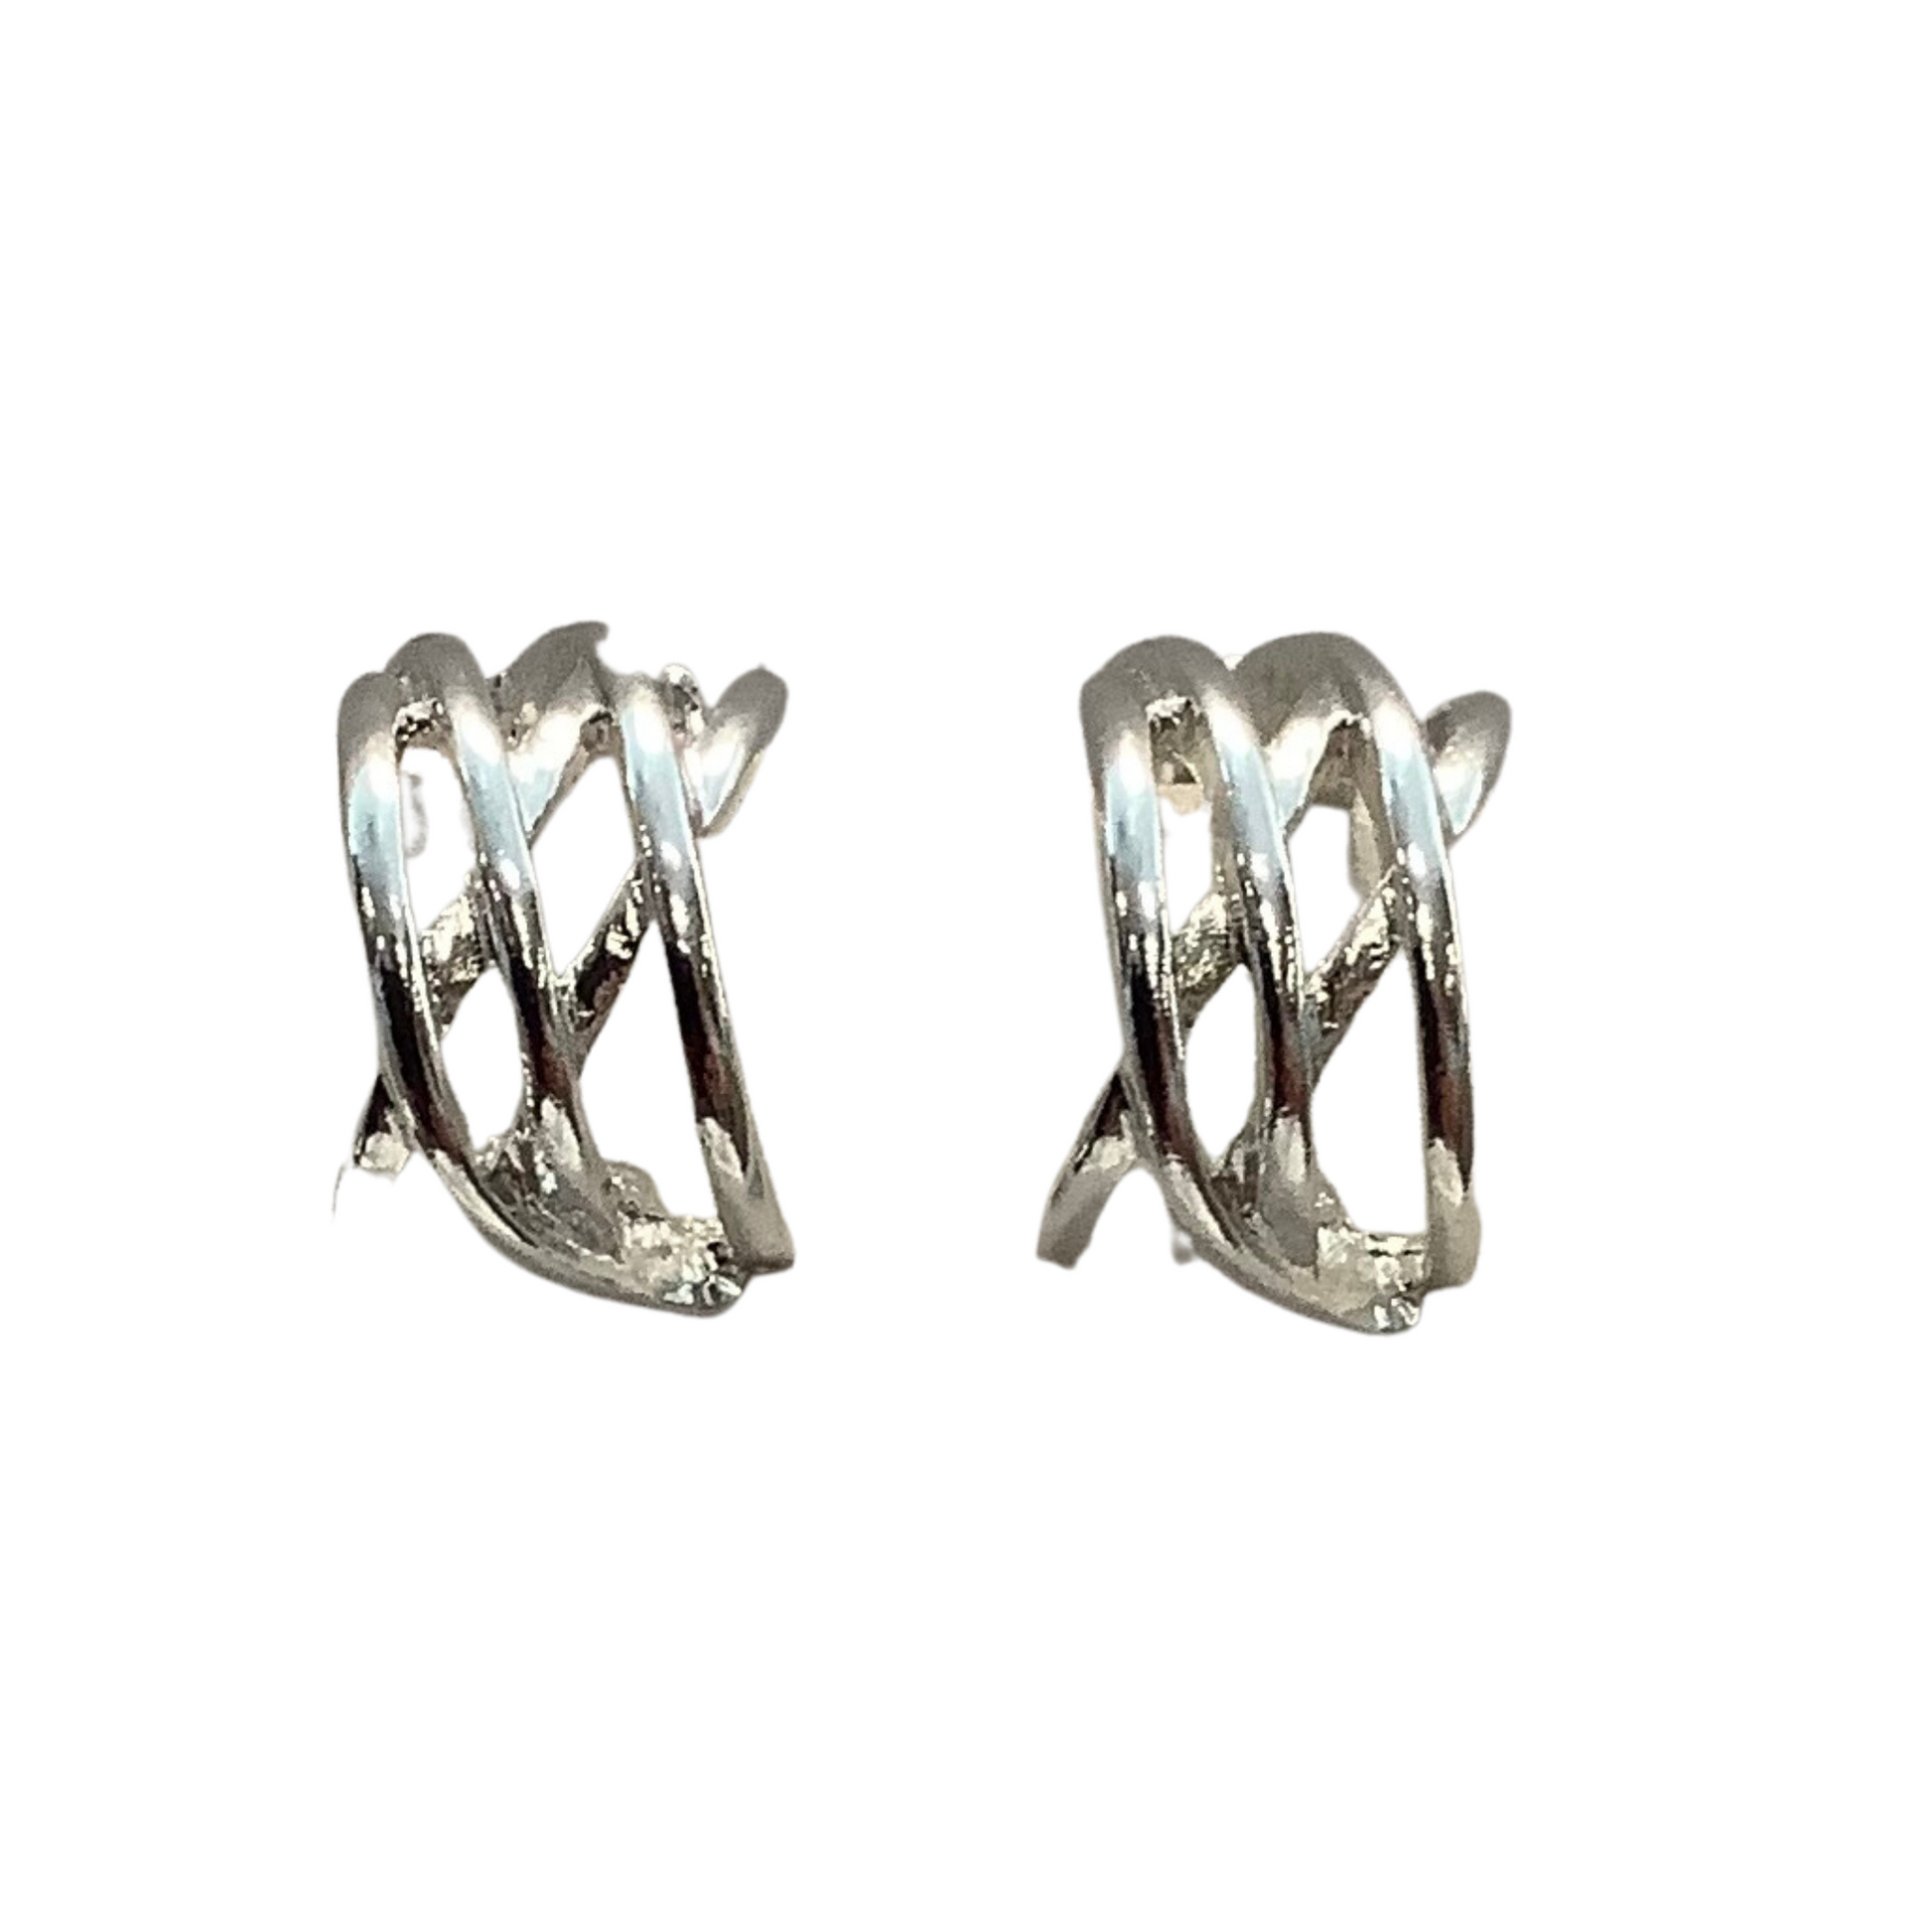 Silver woven clip on earrings